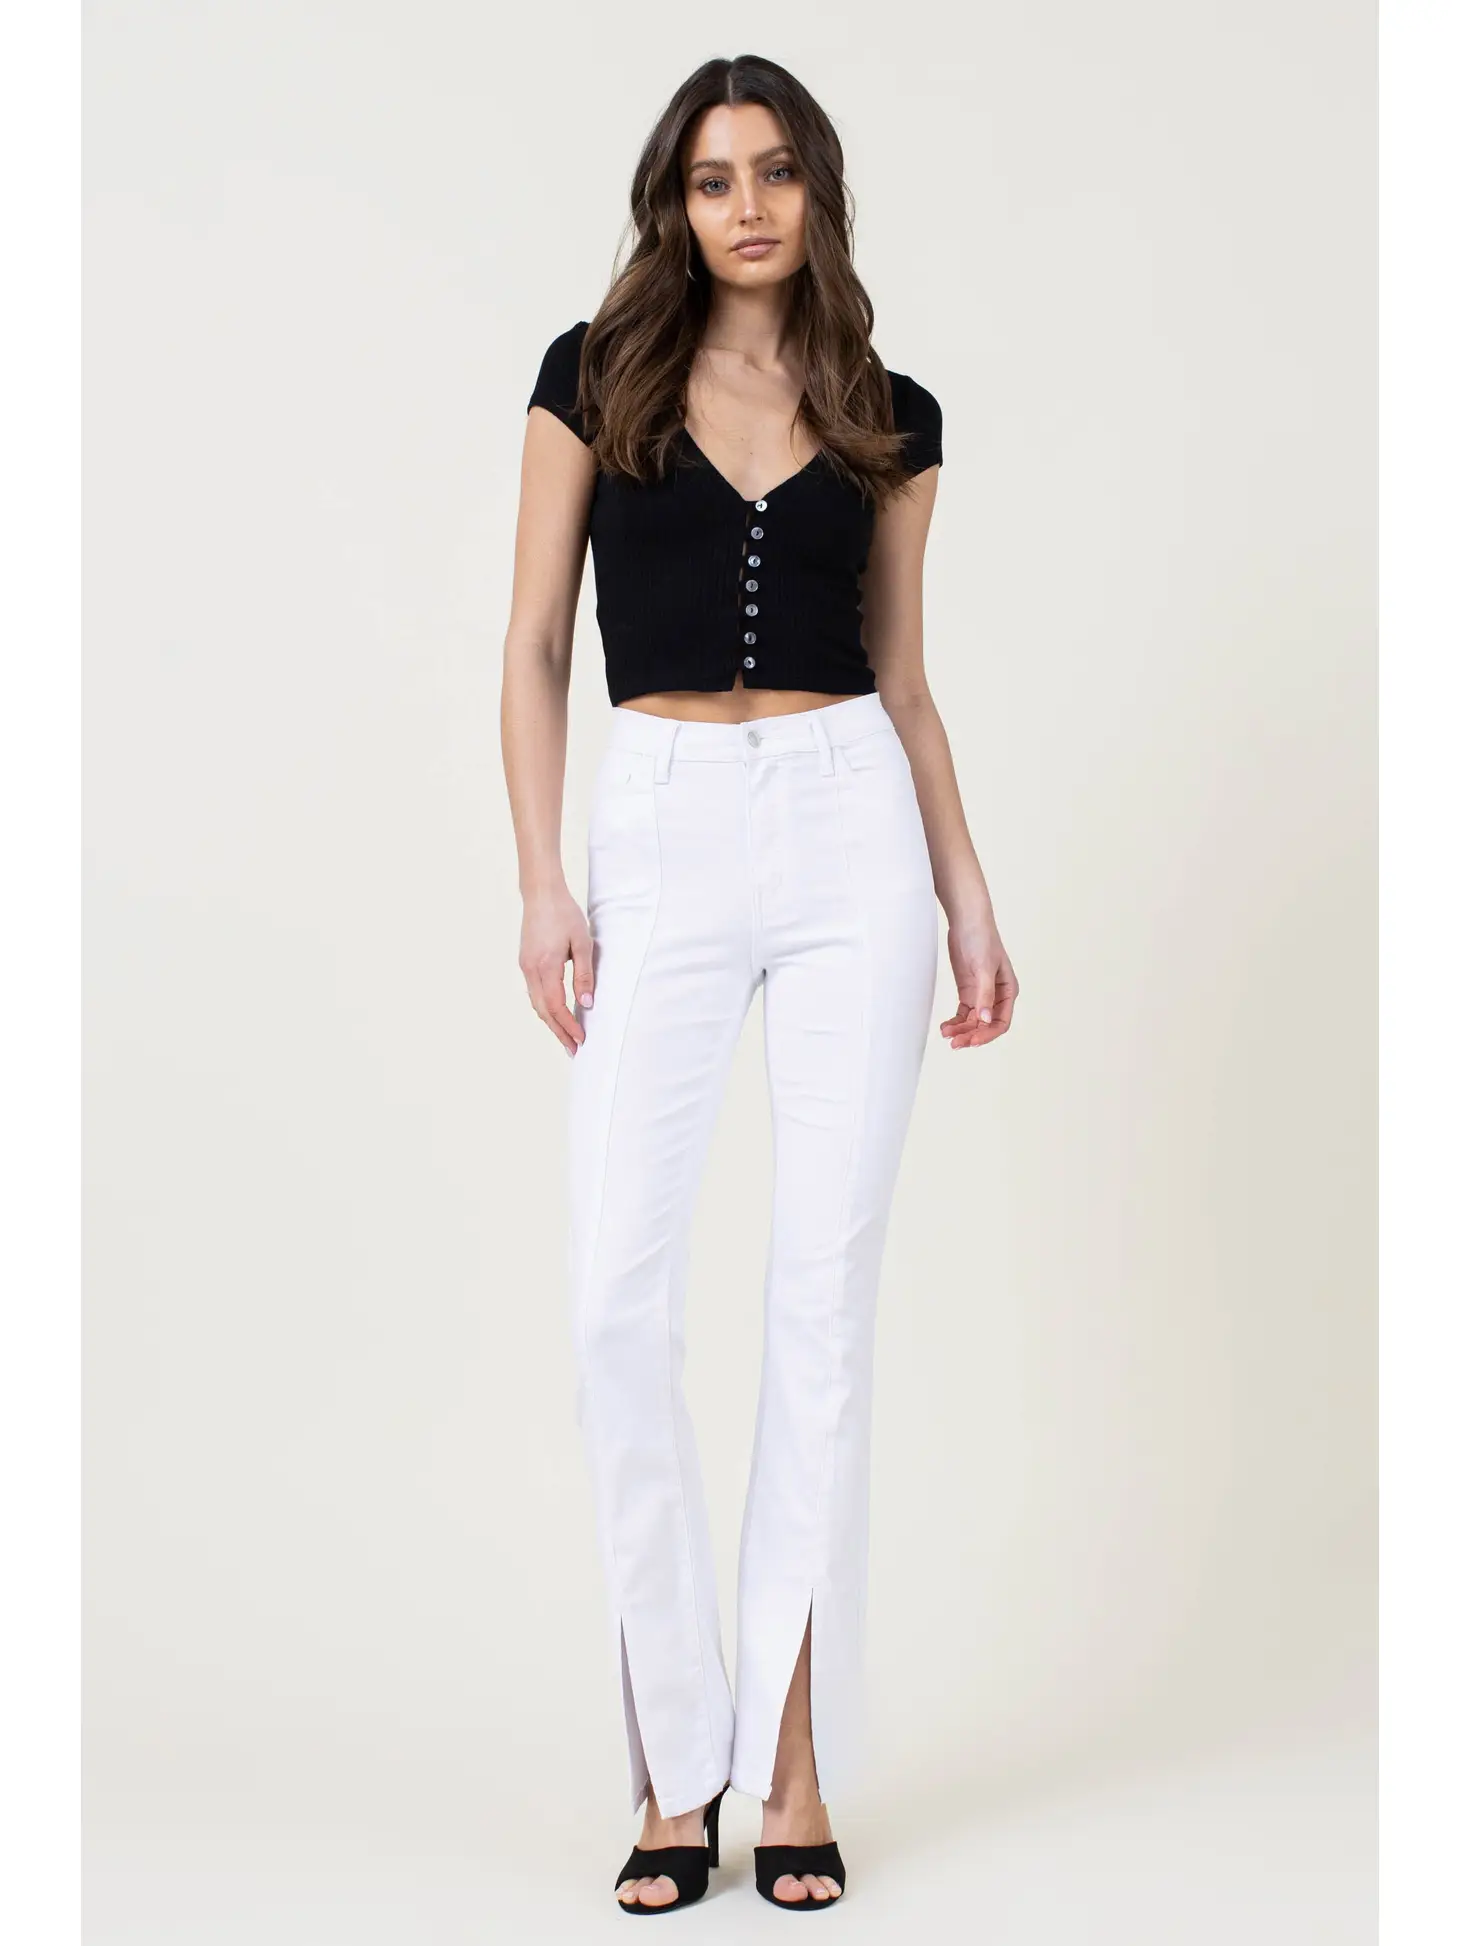 White front slit jeans